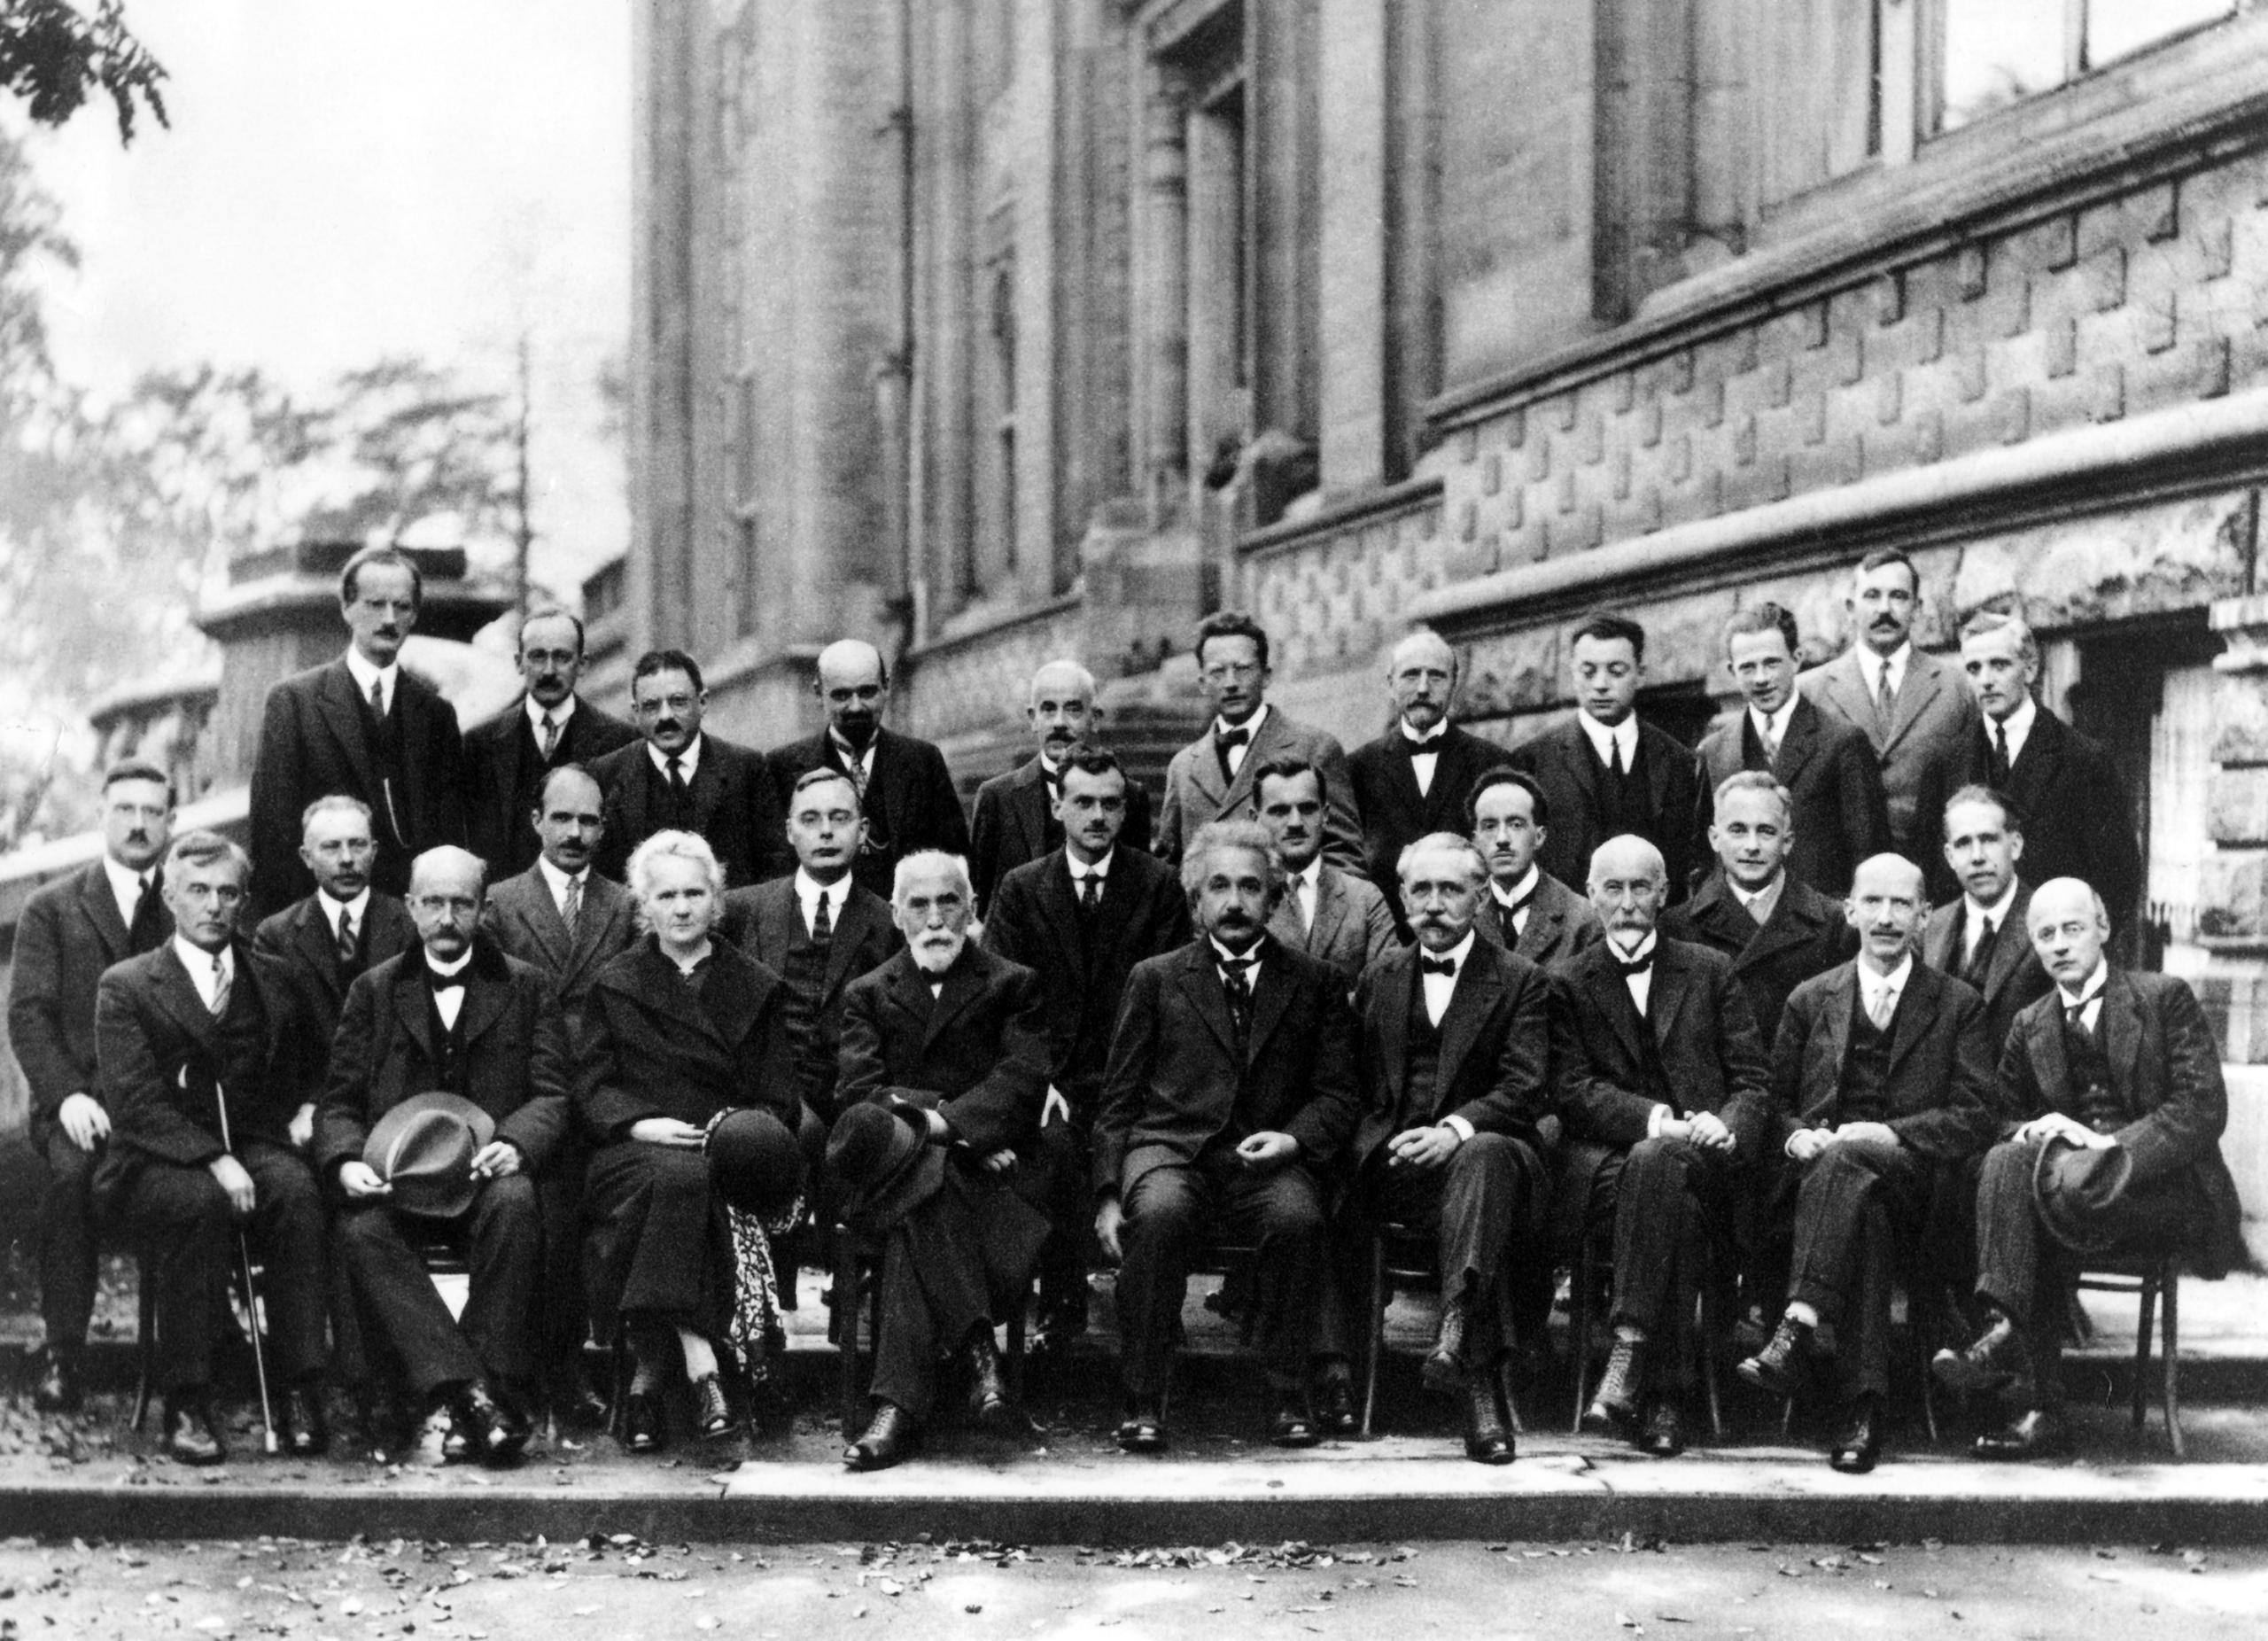 全球物理学界的顶尖人物齐聚1927年在布鲁塞尔举行的索尔维会议。在这一年，爱因斯坦(中间)和尼尔斯·玻尔(第二排最右)展开了一场足以载入史册的的论战。合影中还有量子物理的先驱马克斯·普朗克(前排左二)，坐在他身旁的居里夫人是与会的唯一女性。